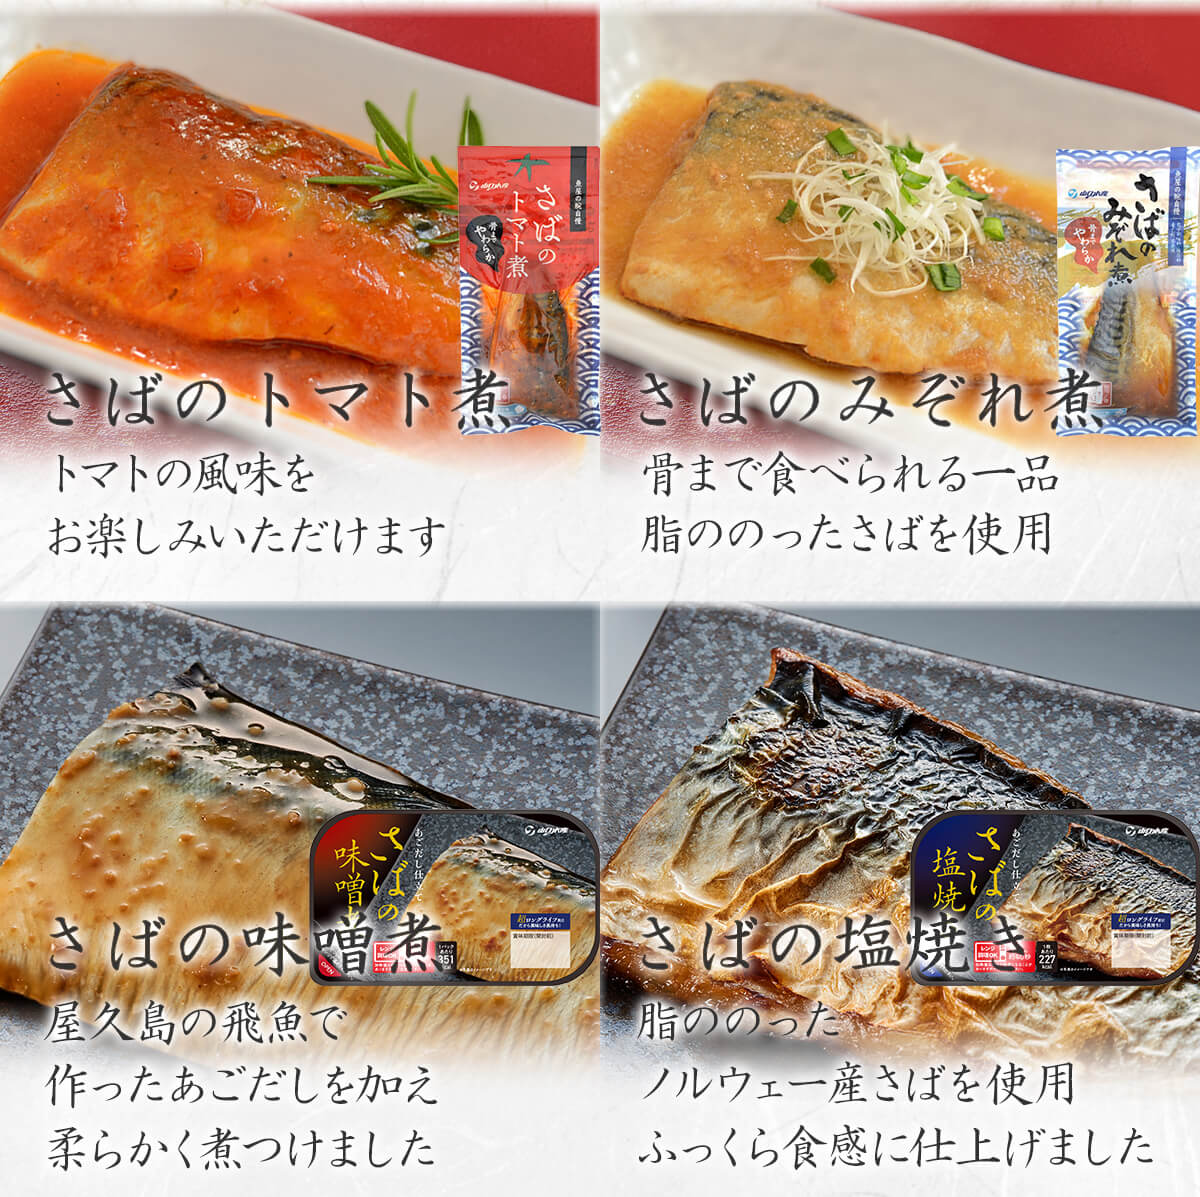 レトルト 惣菜 魚 ８種12食 セット レトルト食品 おかず レンジ 湯煎